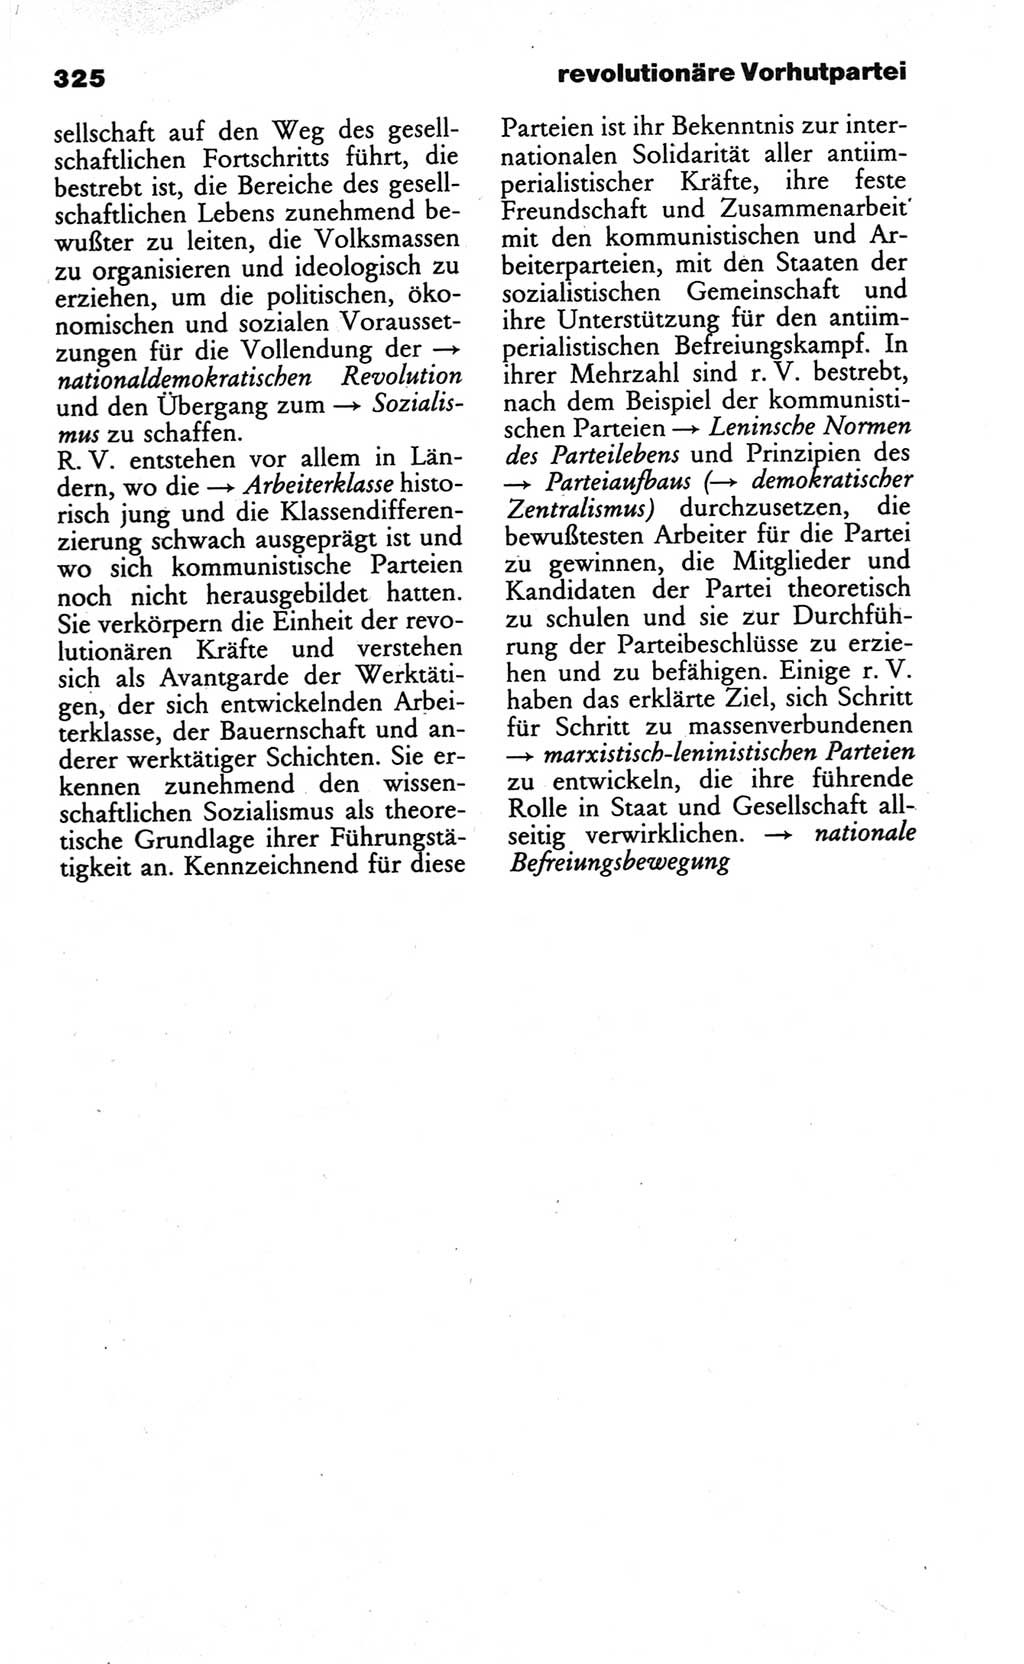 Wörterbuch des wissenschaftlichen Kommunismus [Deutsche Demokratische Republik (DDR)] 1984, Seite 325 (Wb. wiss. Komm. DDR 1984, S. 325)